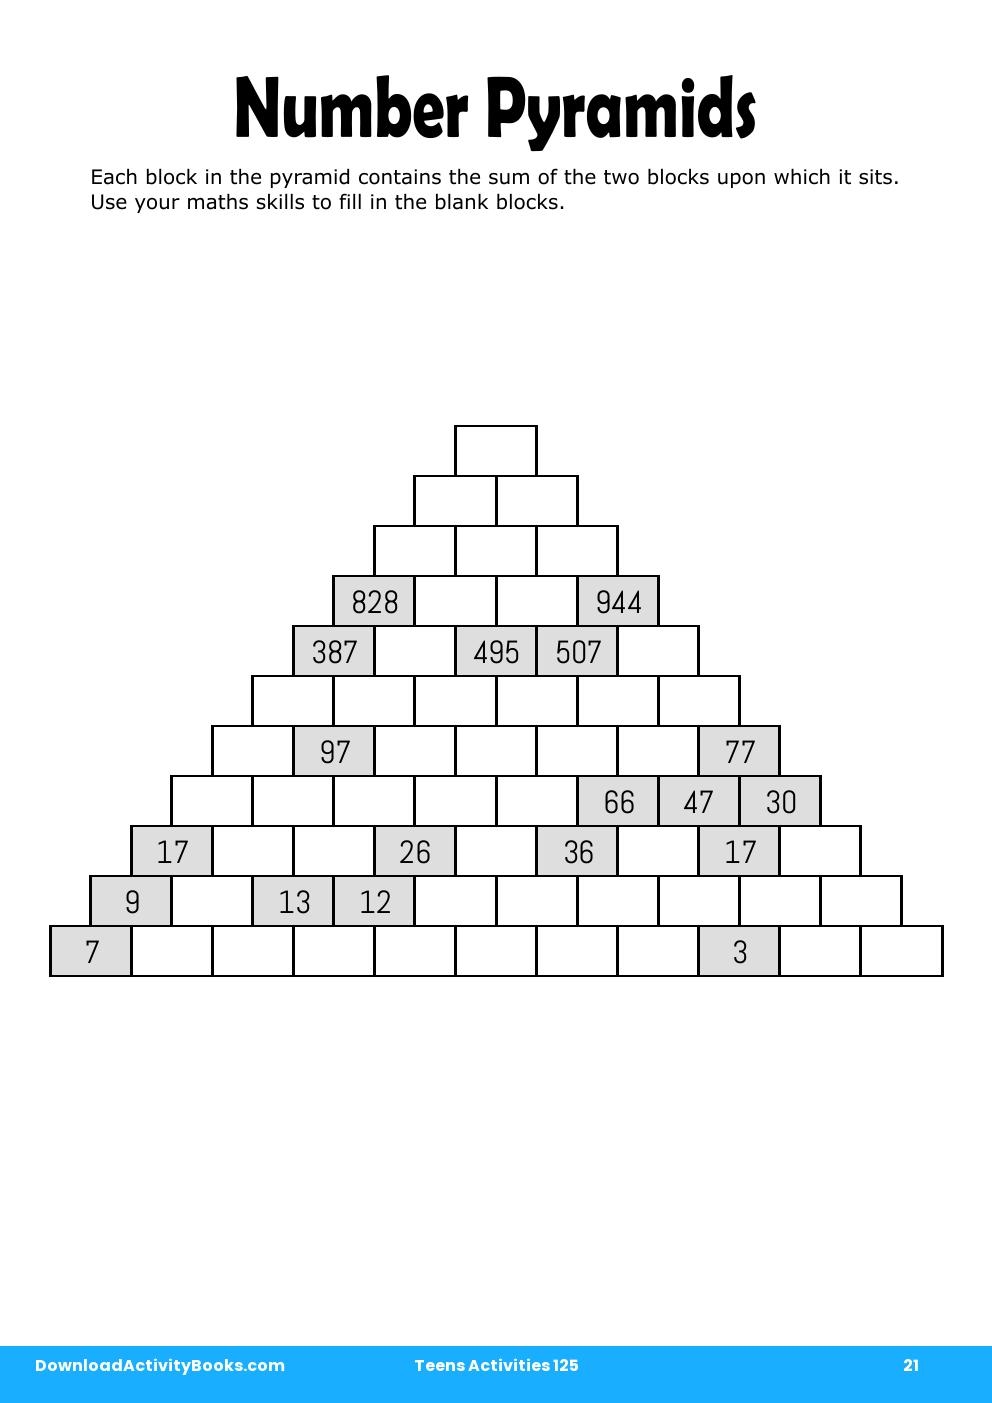 Number Pyramids in Teens Activities 125